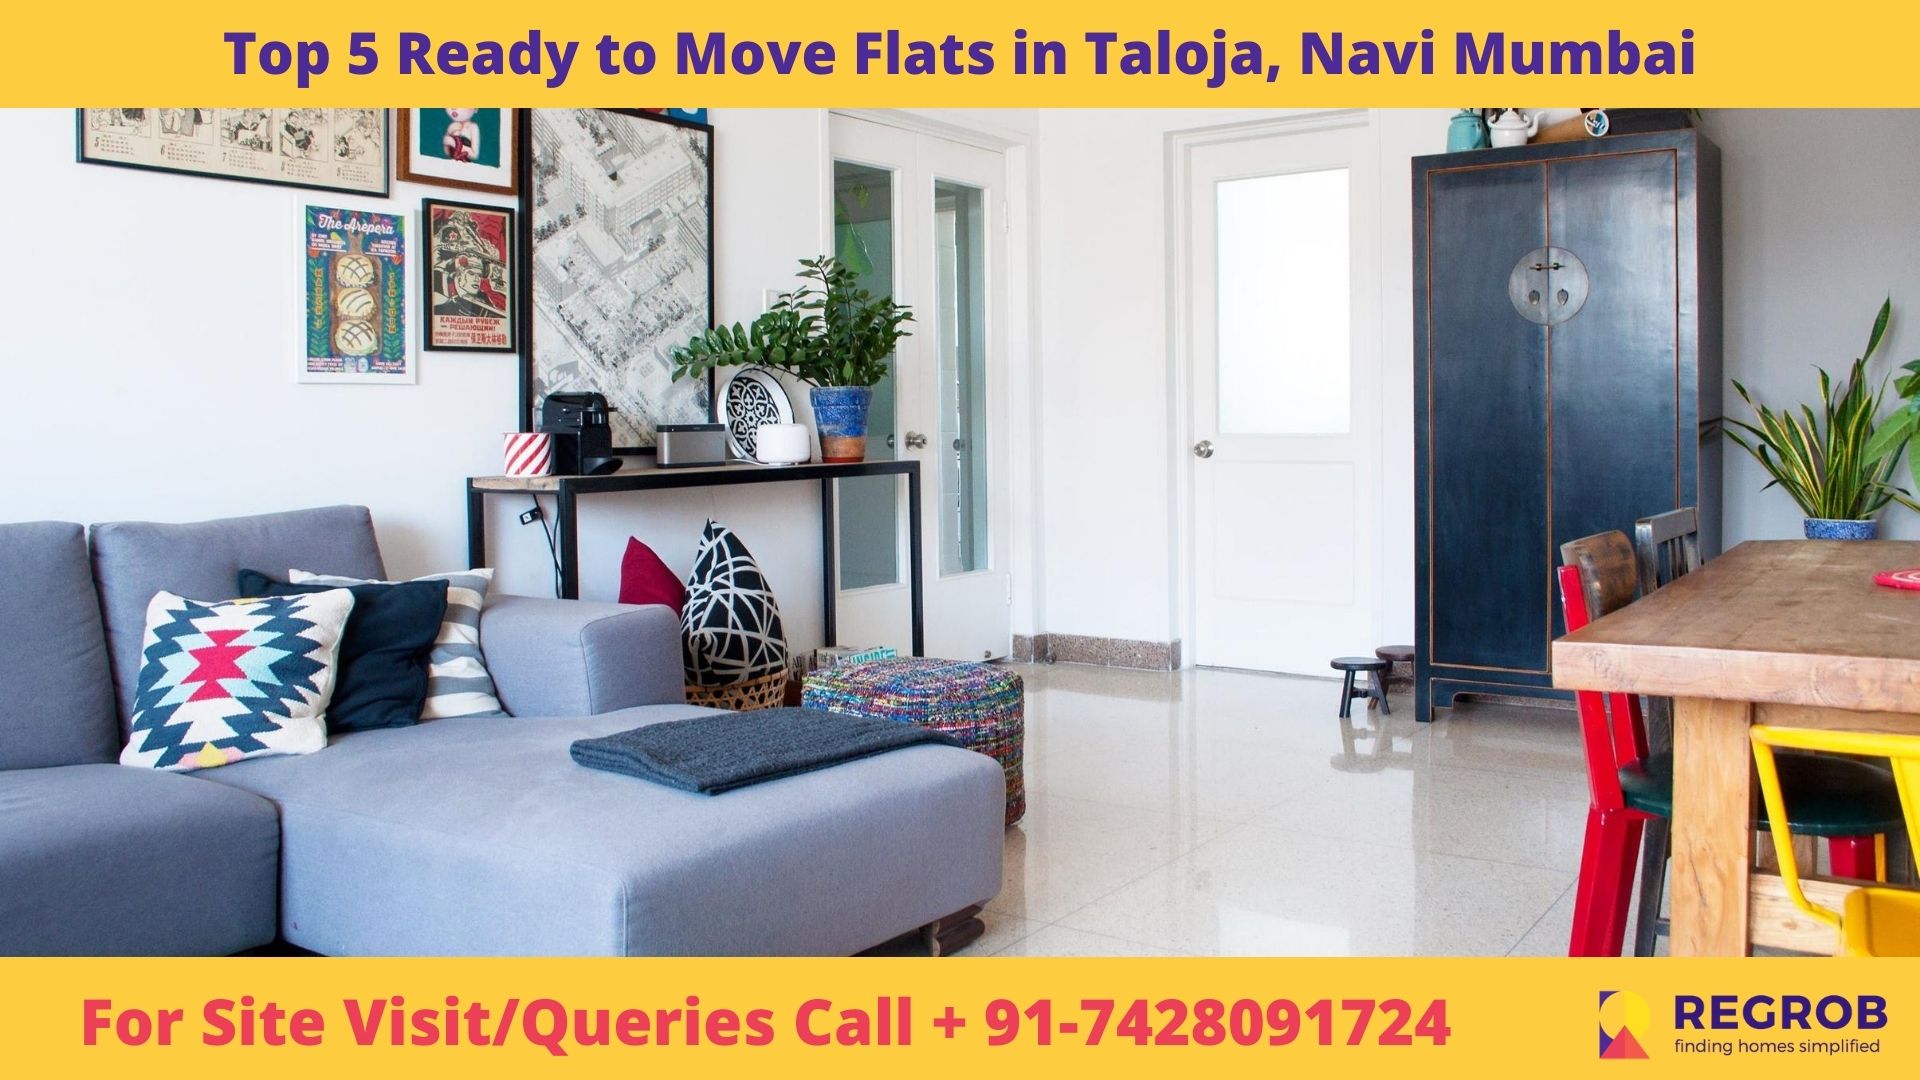 Top 5 Ready to Move Flats in Taloja, Navi Mumbai